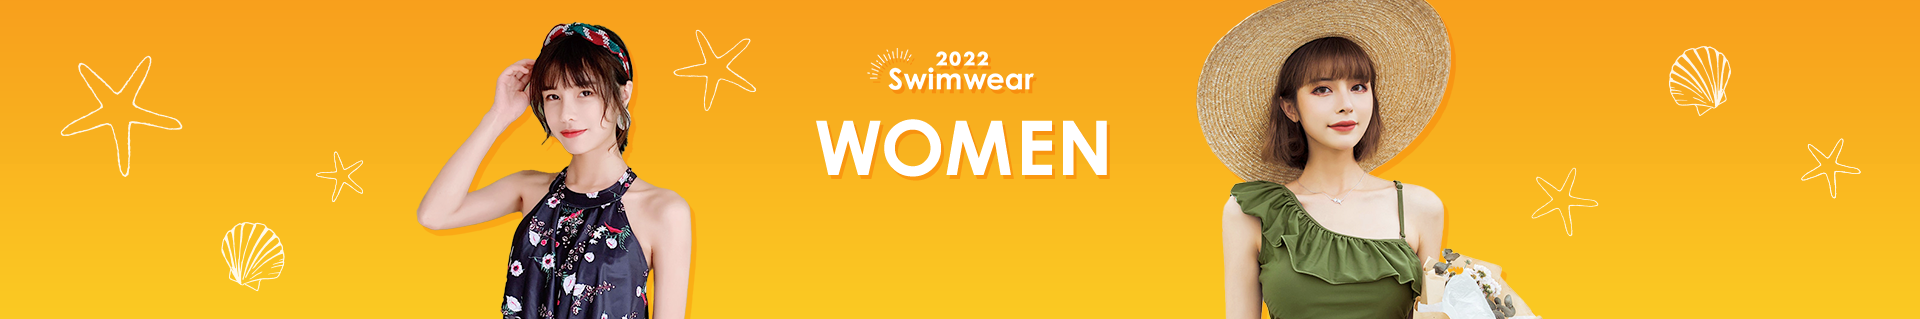 2022 swimwear WOMEN